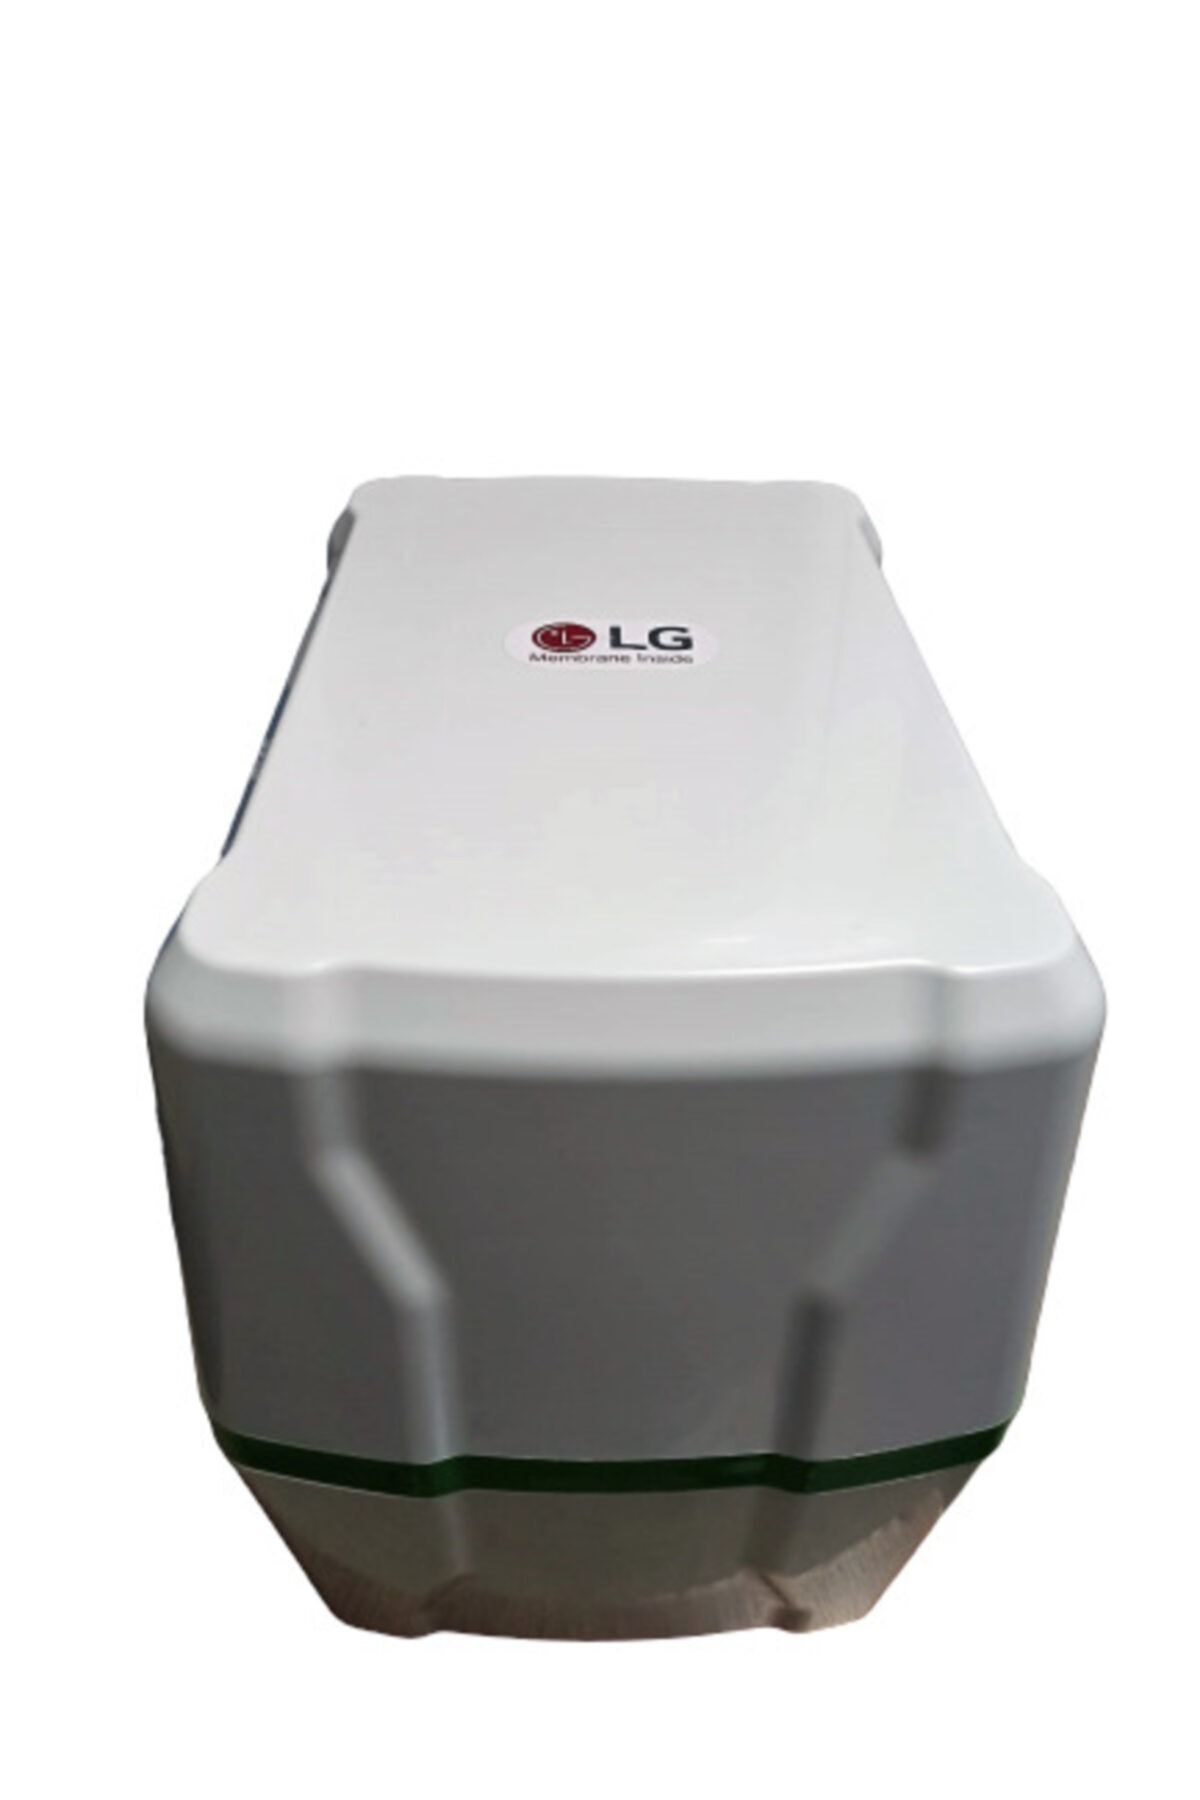 LG Chem Membran Fav-water 5 Aşamalı 8 Litre Metal Tanklı Su Arıtma Cihazı